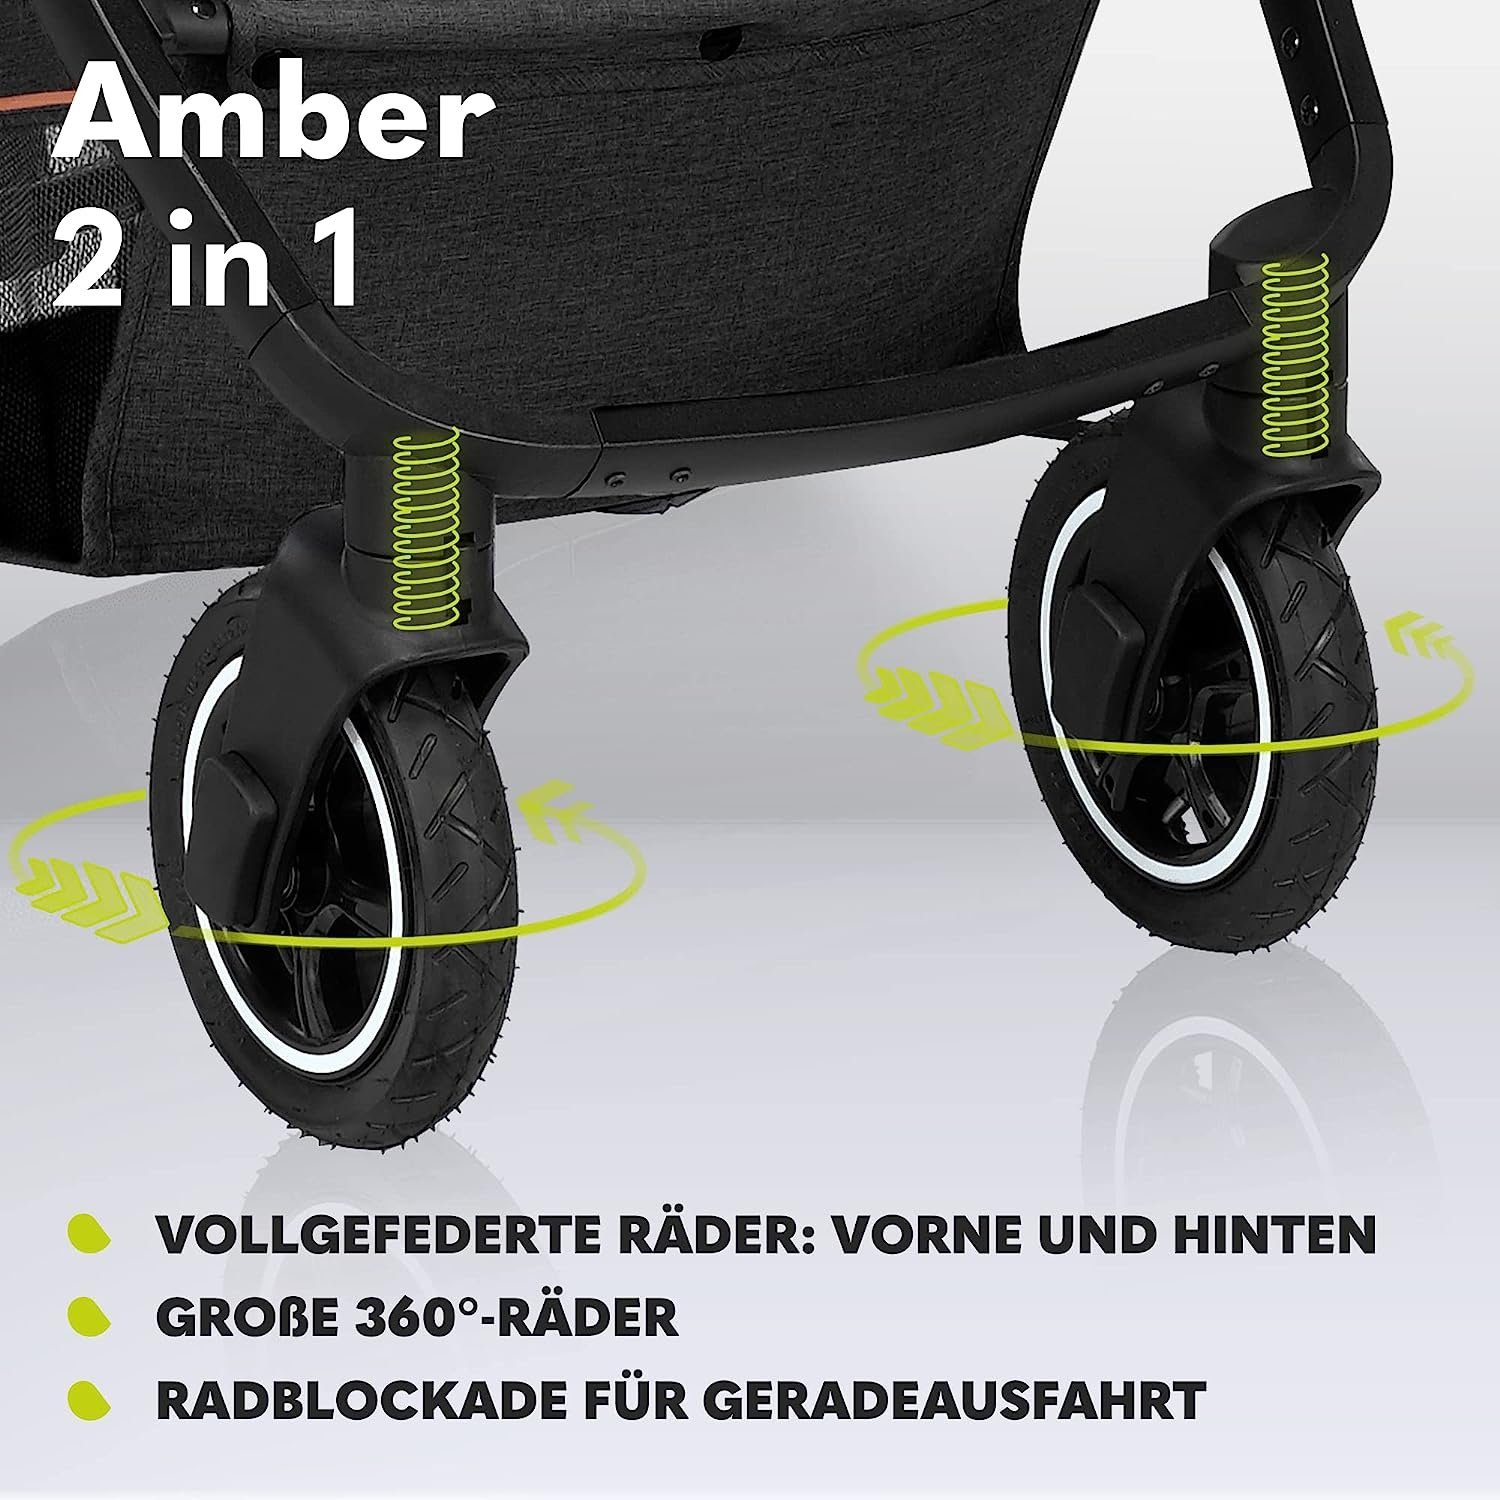 Tasche Amber, Regenschutz Dunkelgrau 2in1 Kombi-Kinderwagen lionelo Schutzüberzug Moskitonetz